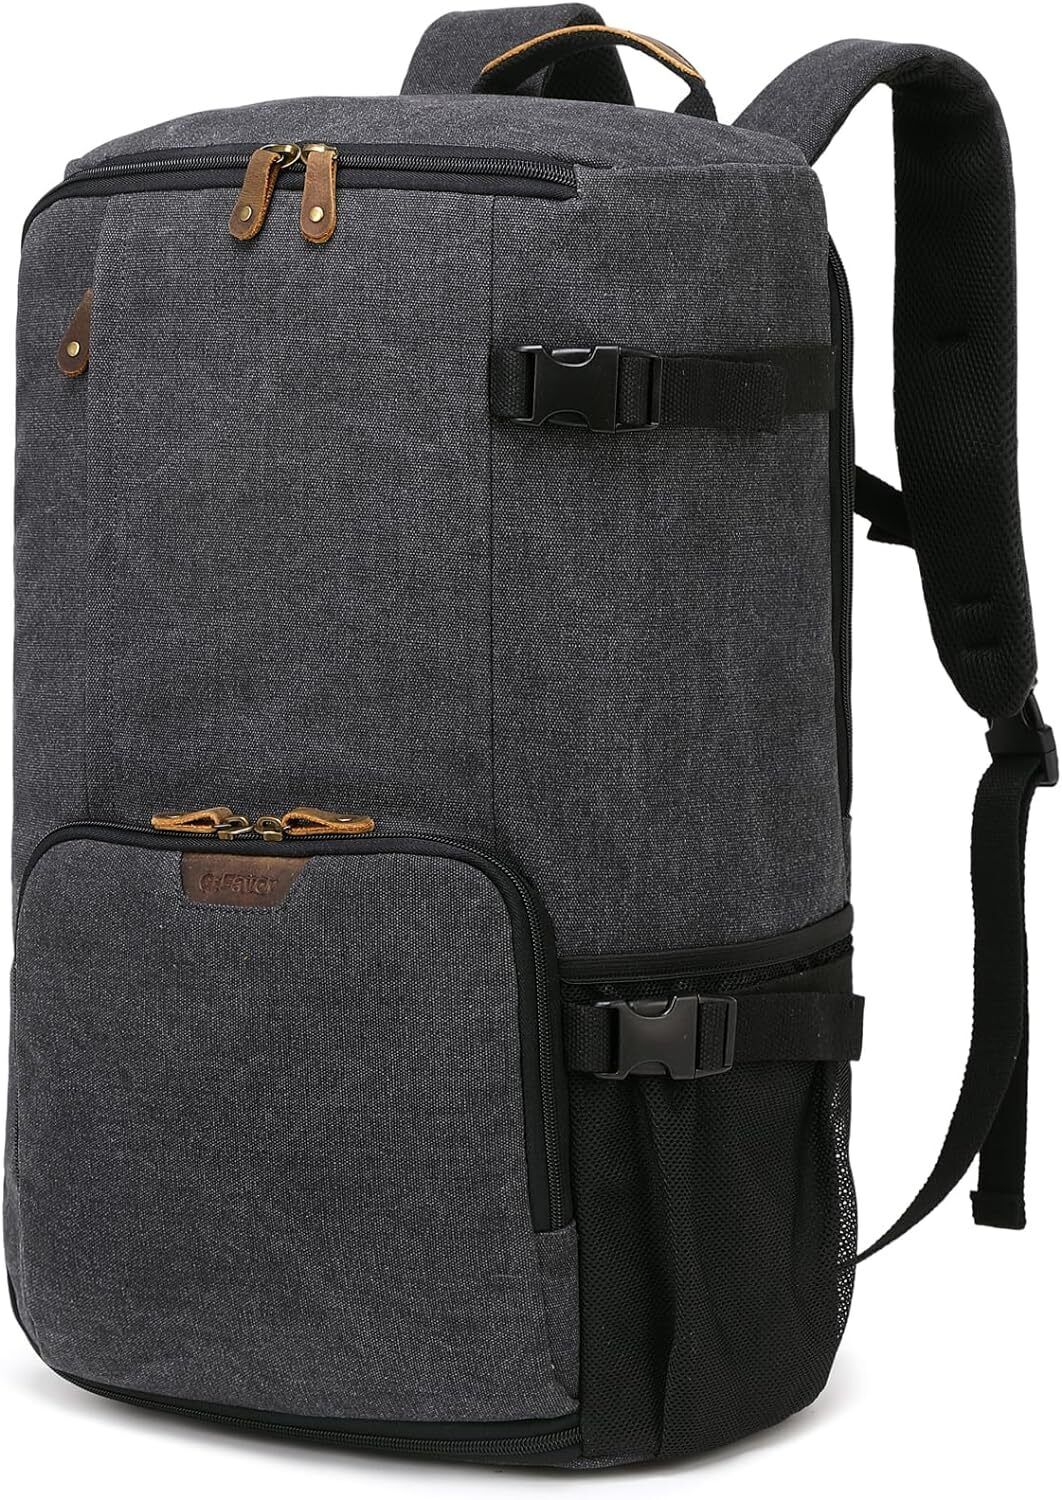 G-FAVOR Travel Backpack 40L, Vintage Canvas Rucksack Convertible Duffel Bag... 